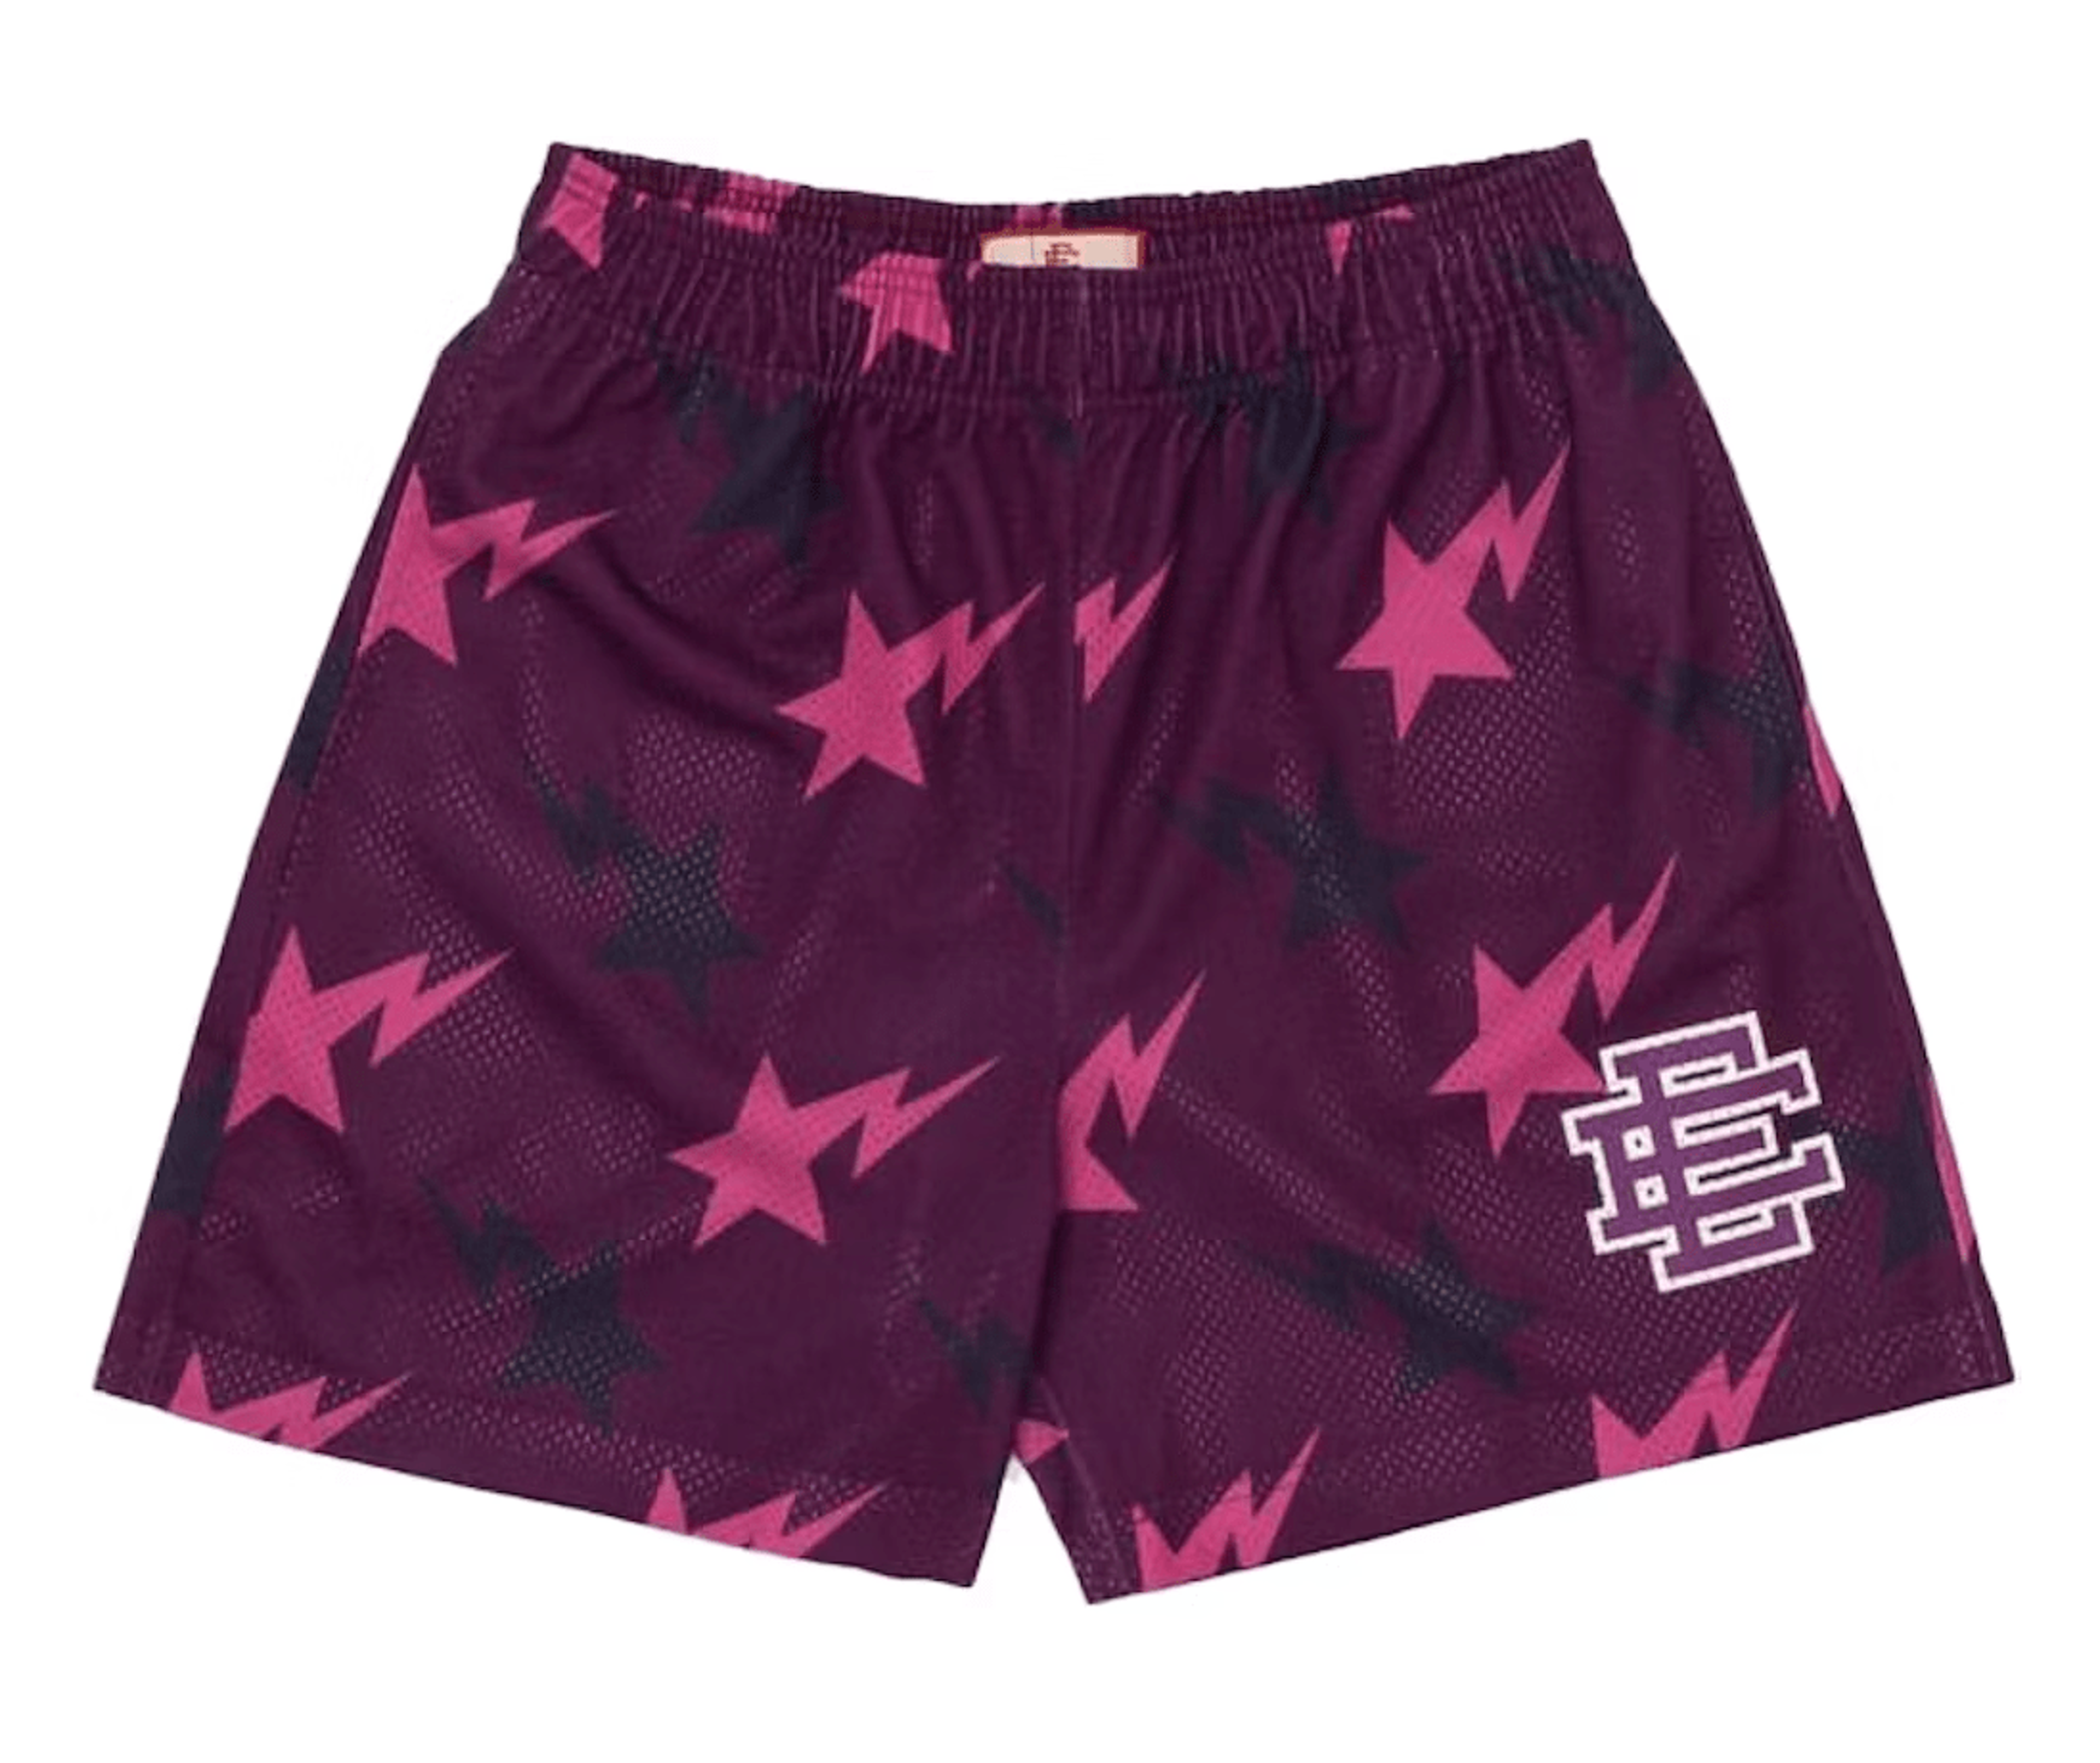 Eric Emanuel x BAPE Miami Basic Shorts Purple Pink Black